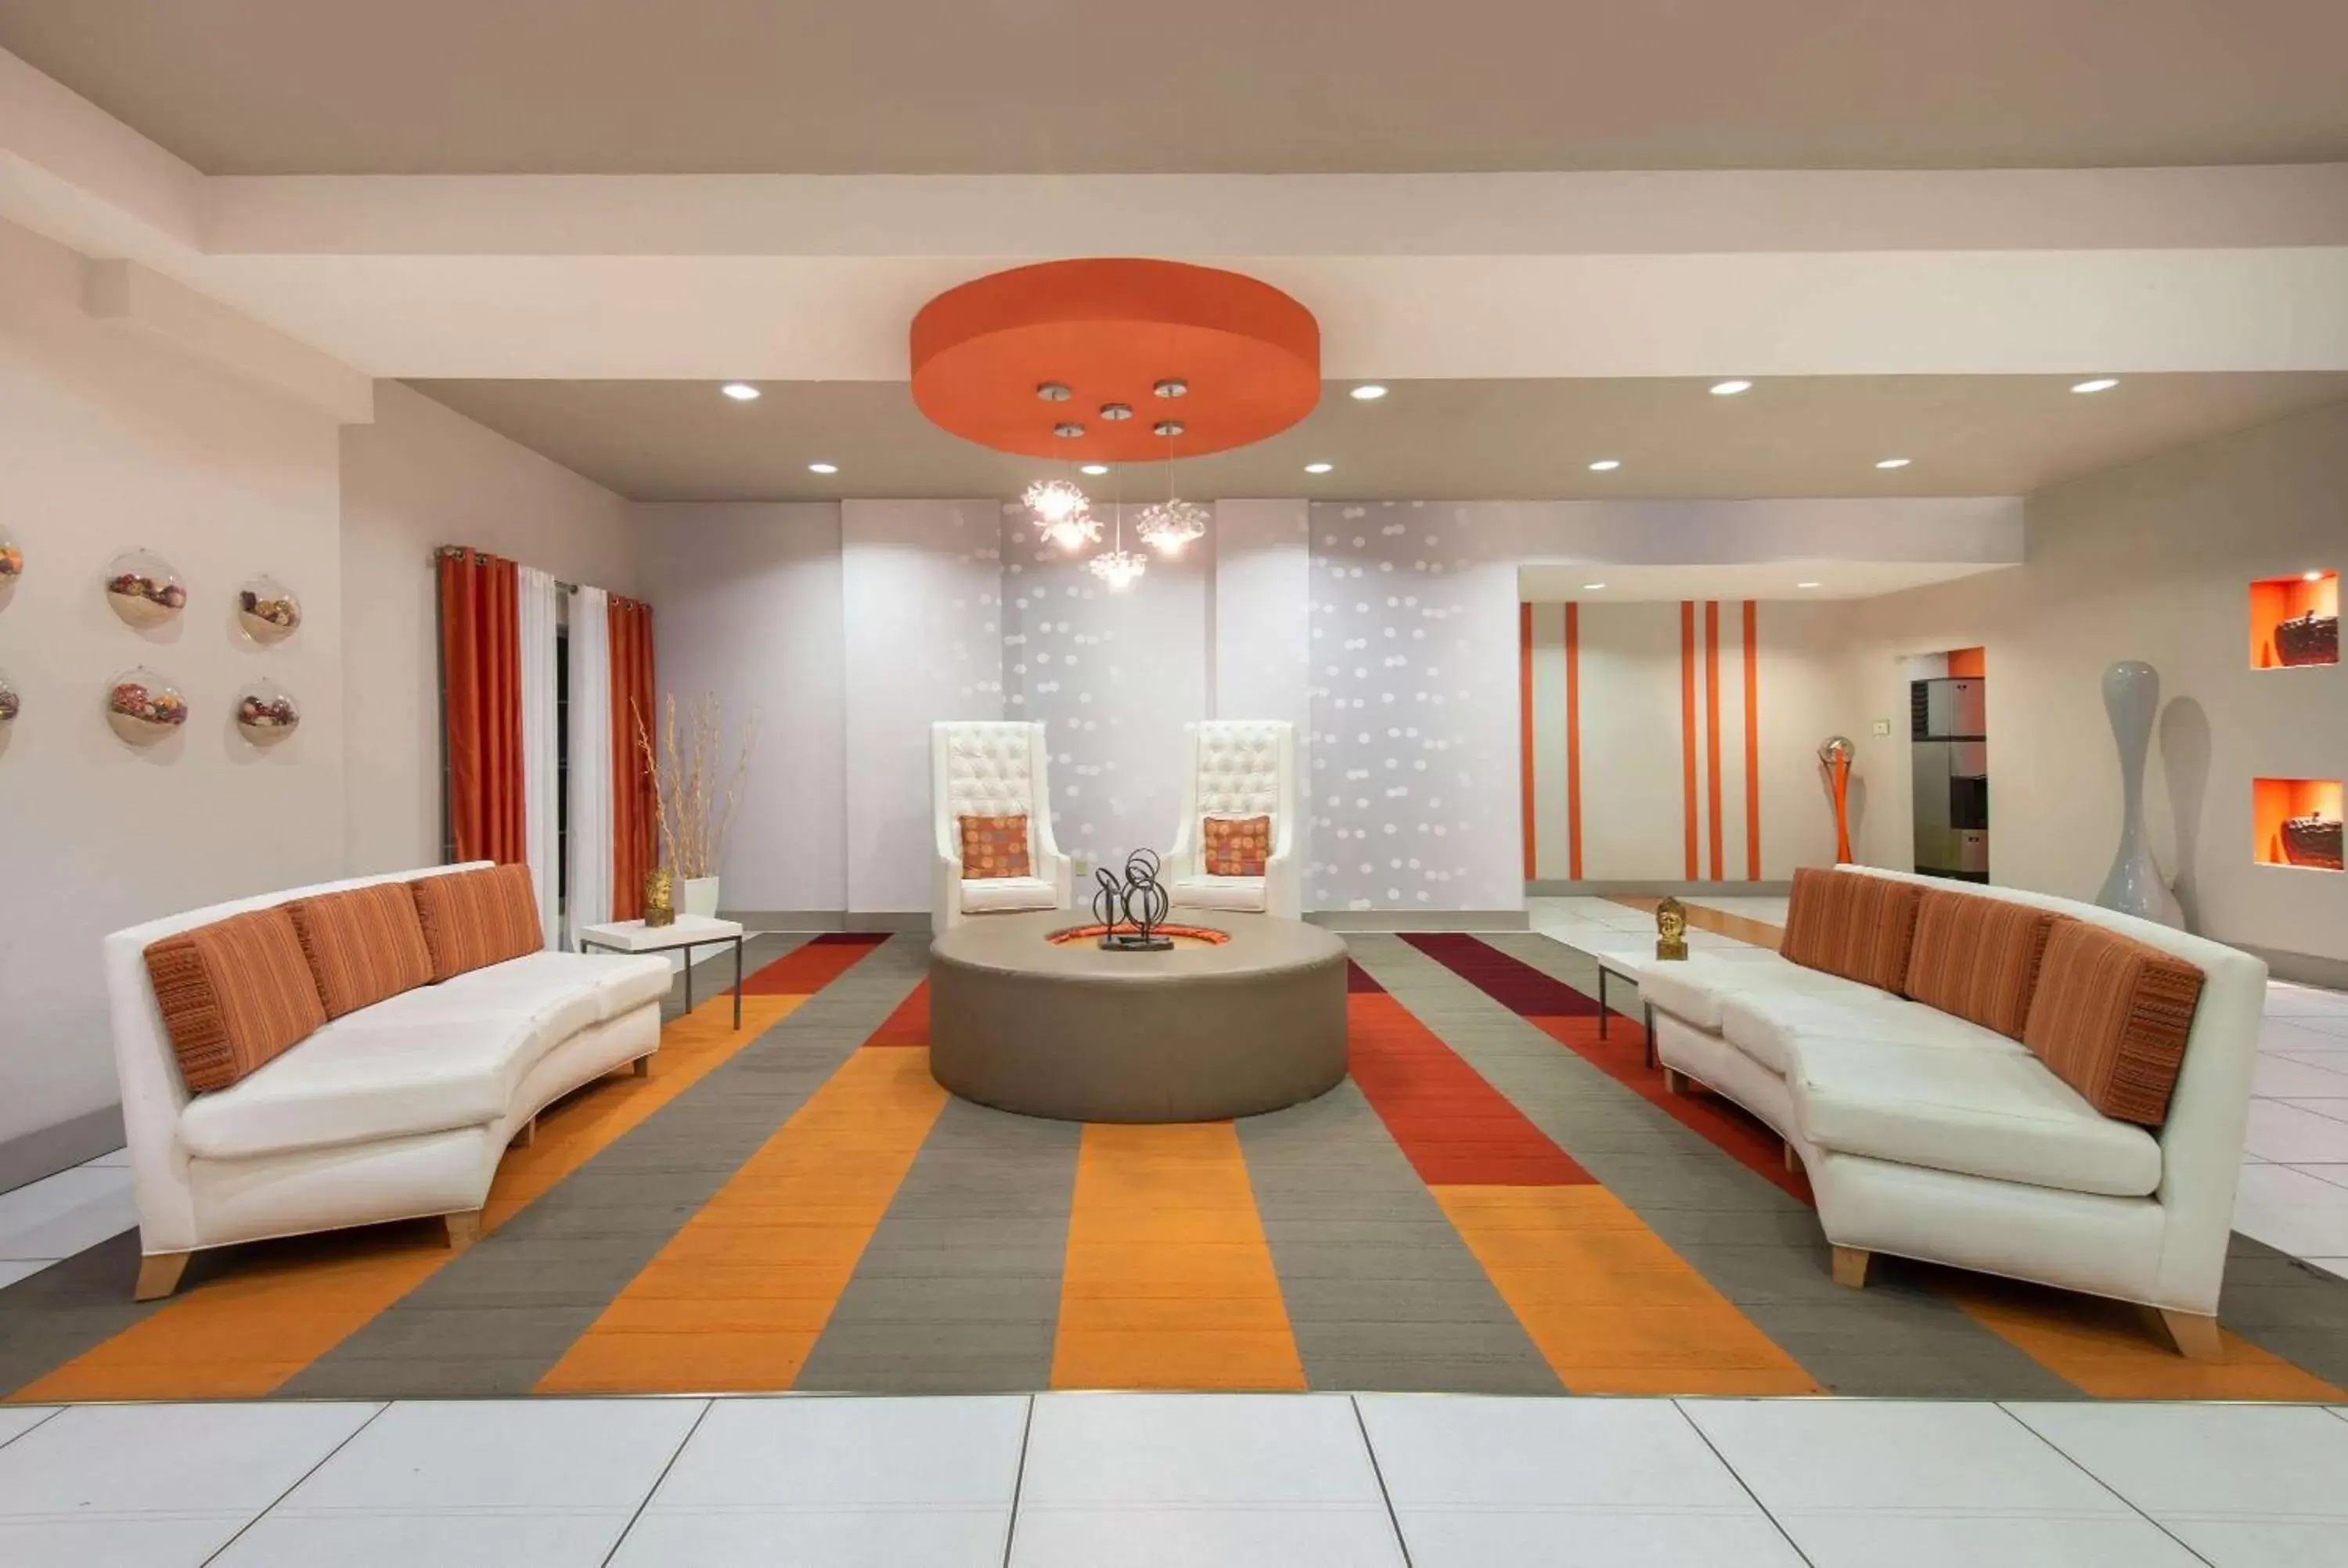 Lobby or reception in La Quinta by Wyndham Harrisburg-Hershey